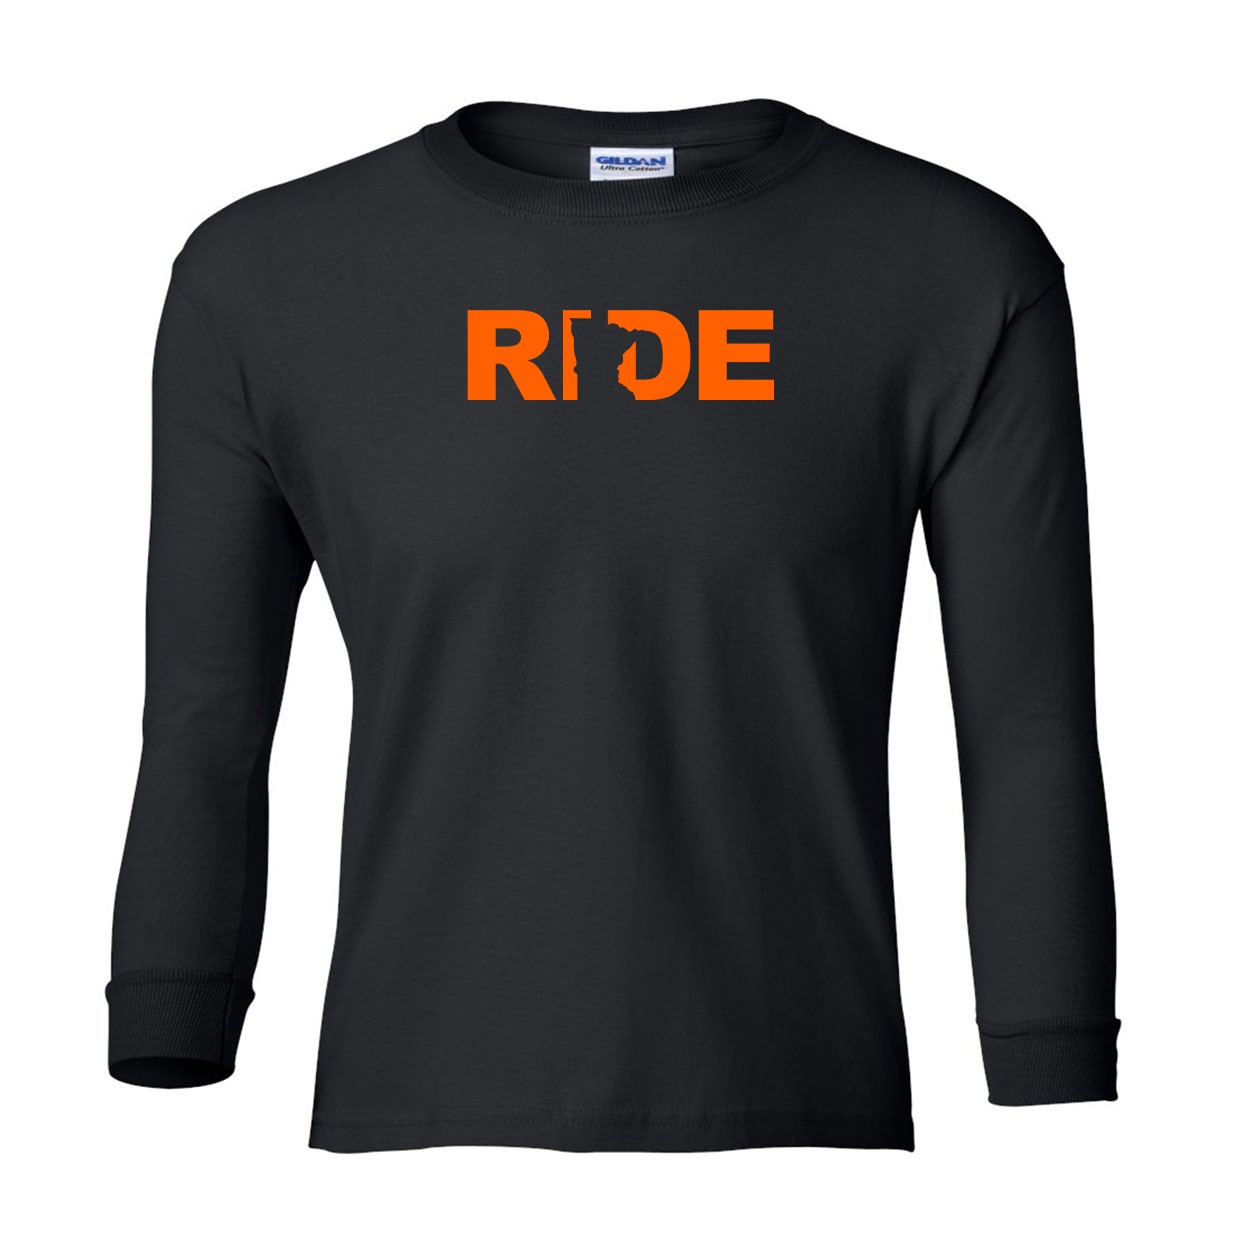 Ride Minnesota Classic Youth Unisex Long Sleeve T-Shirt Black (Orange Logo)